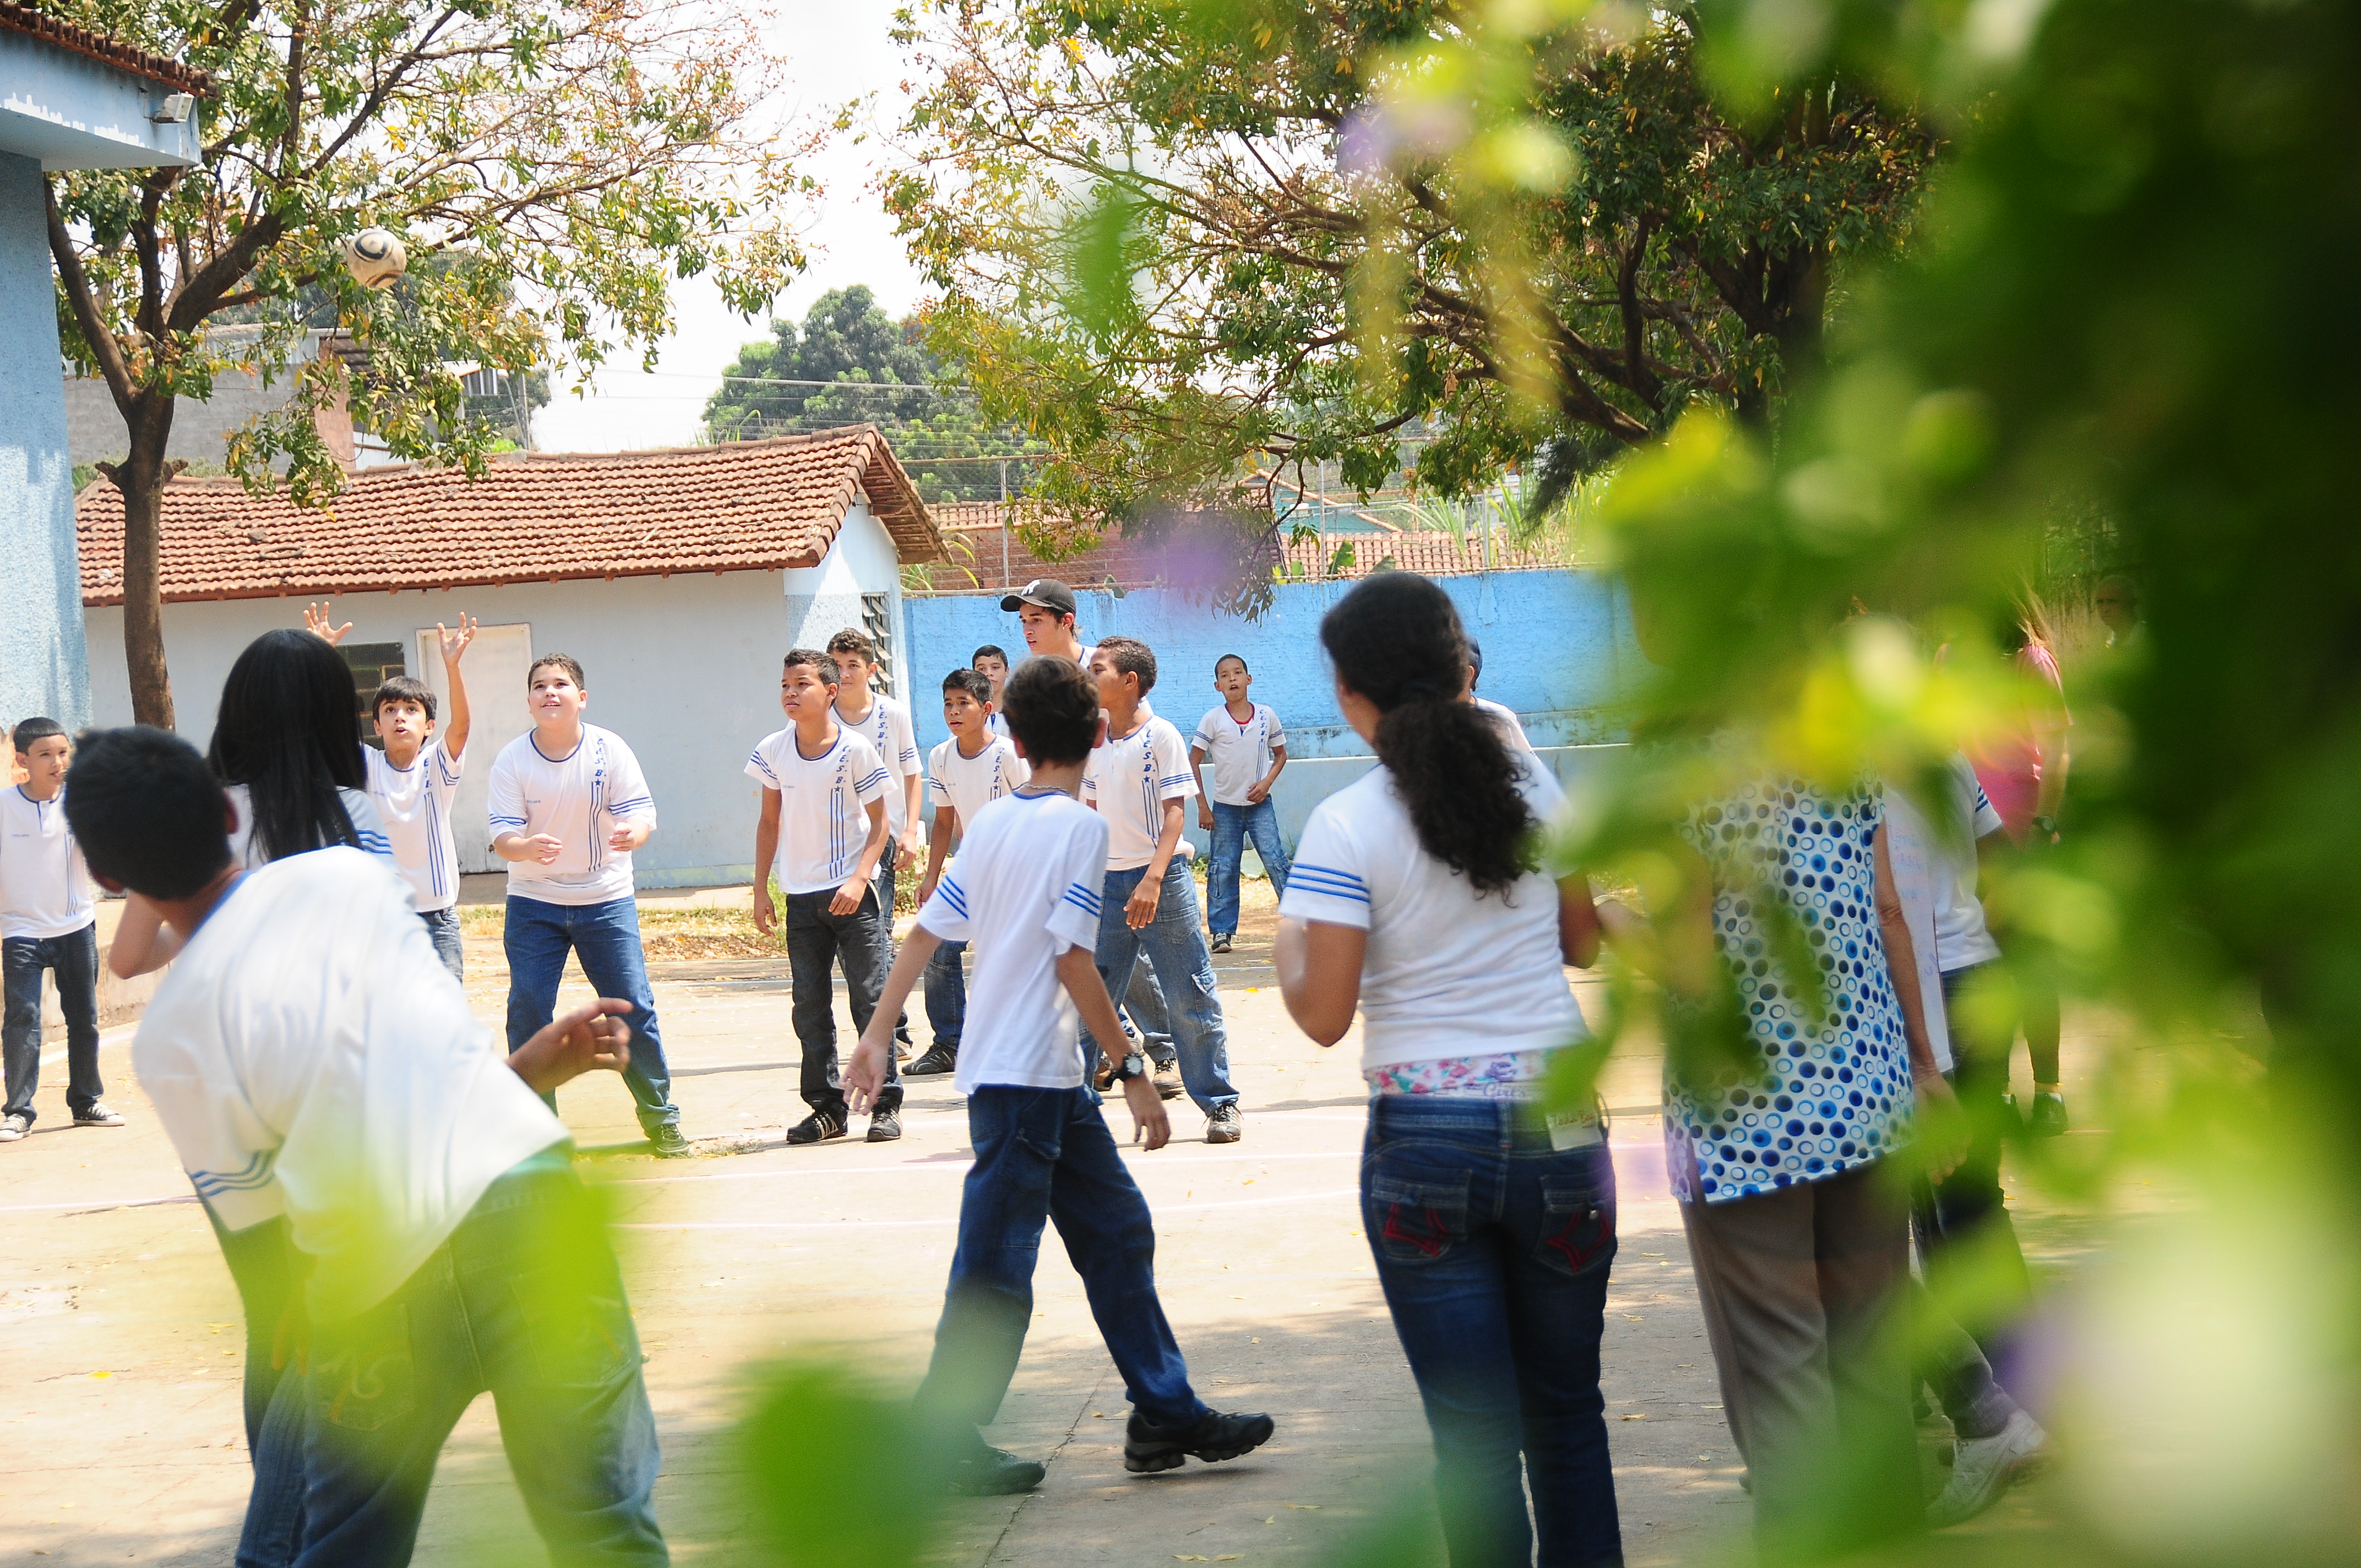 Garotos e garotas uniformizados brincam com bola em pátio do colégio em dia ensolarado.